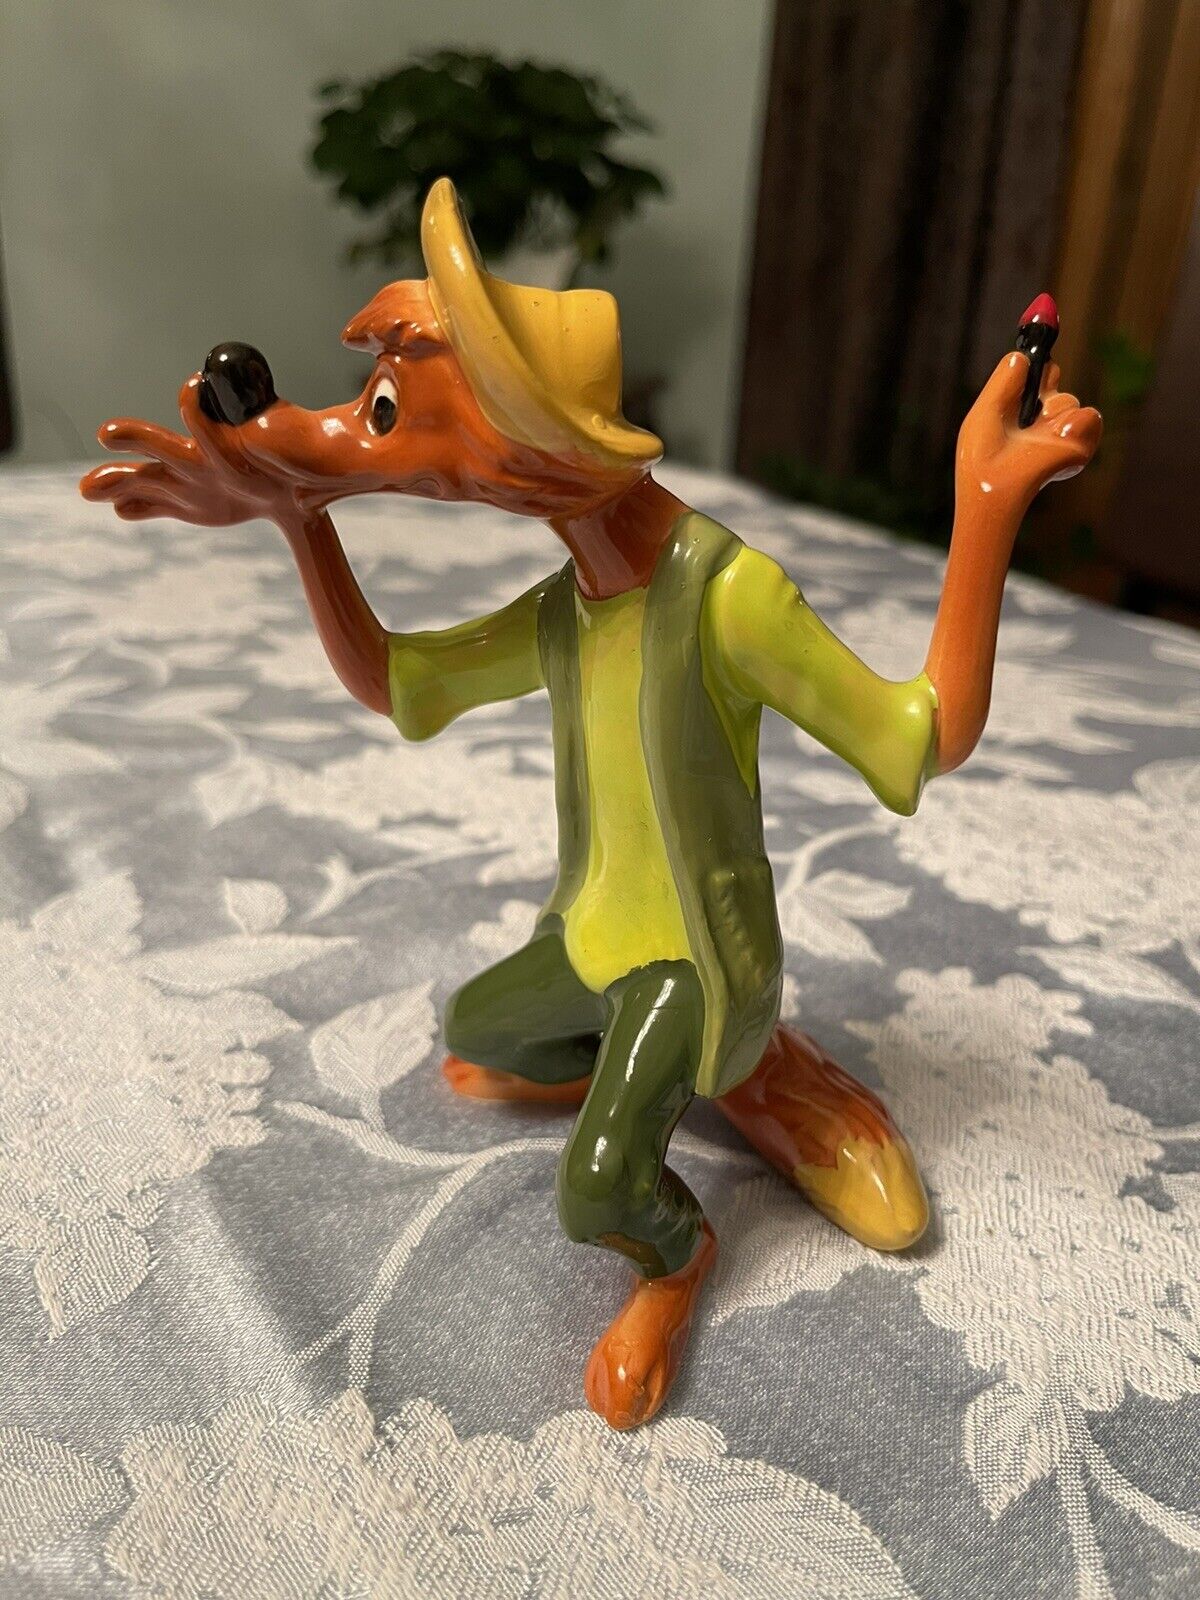 Disney Song Of The South Splash Mountain Vtg Japan Brer Fox Figurine